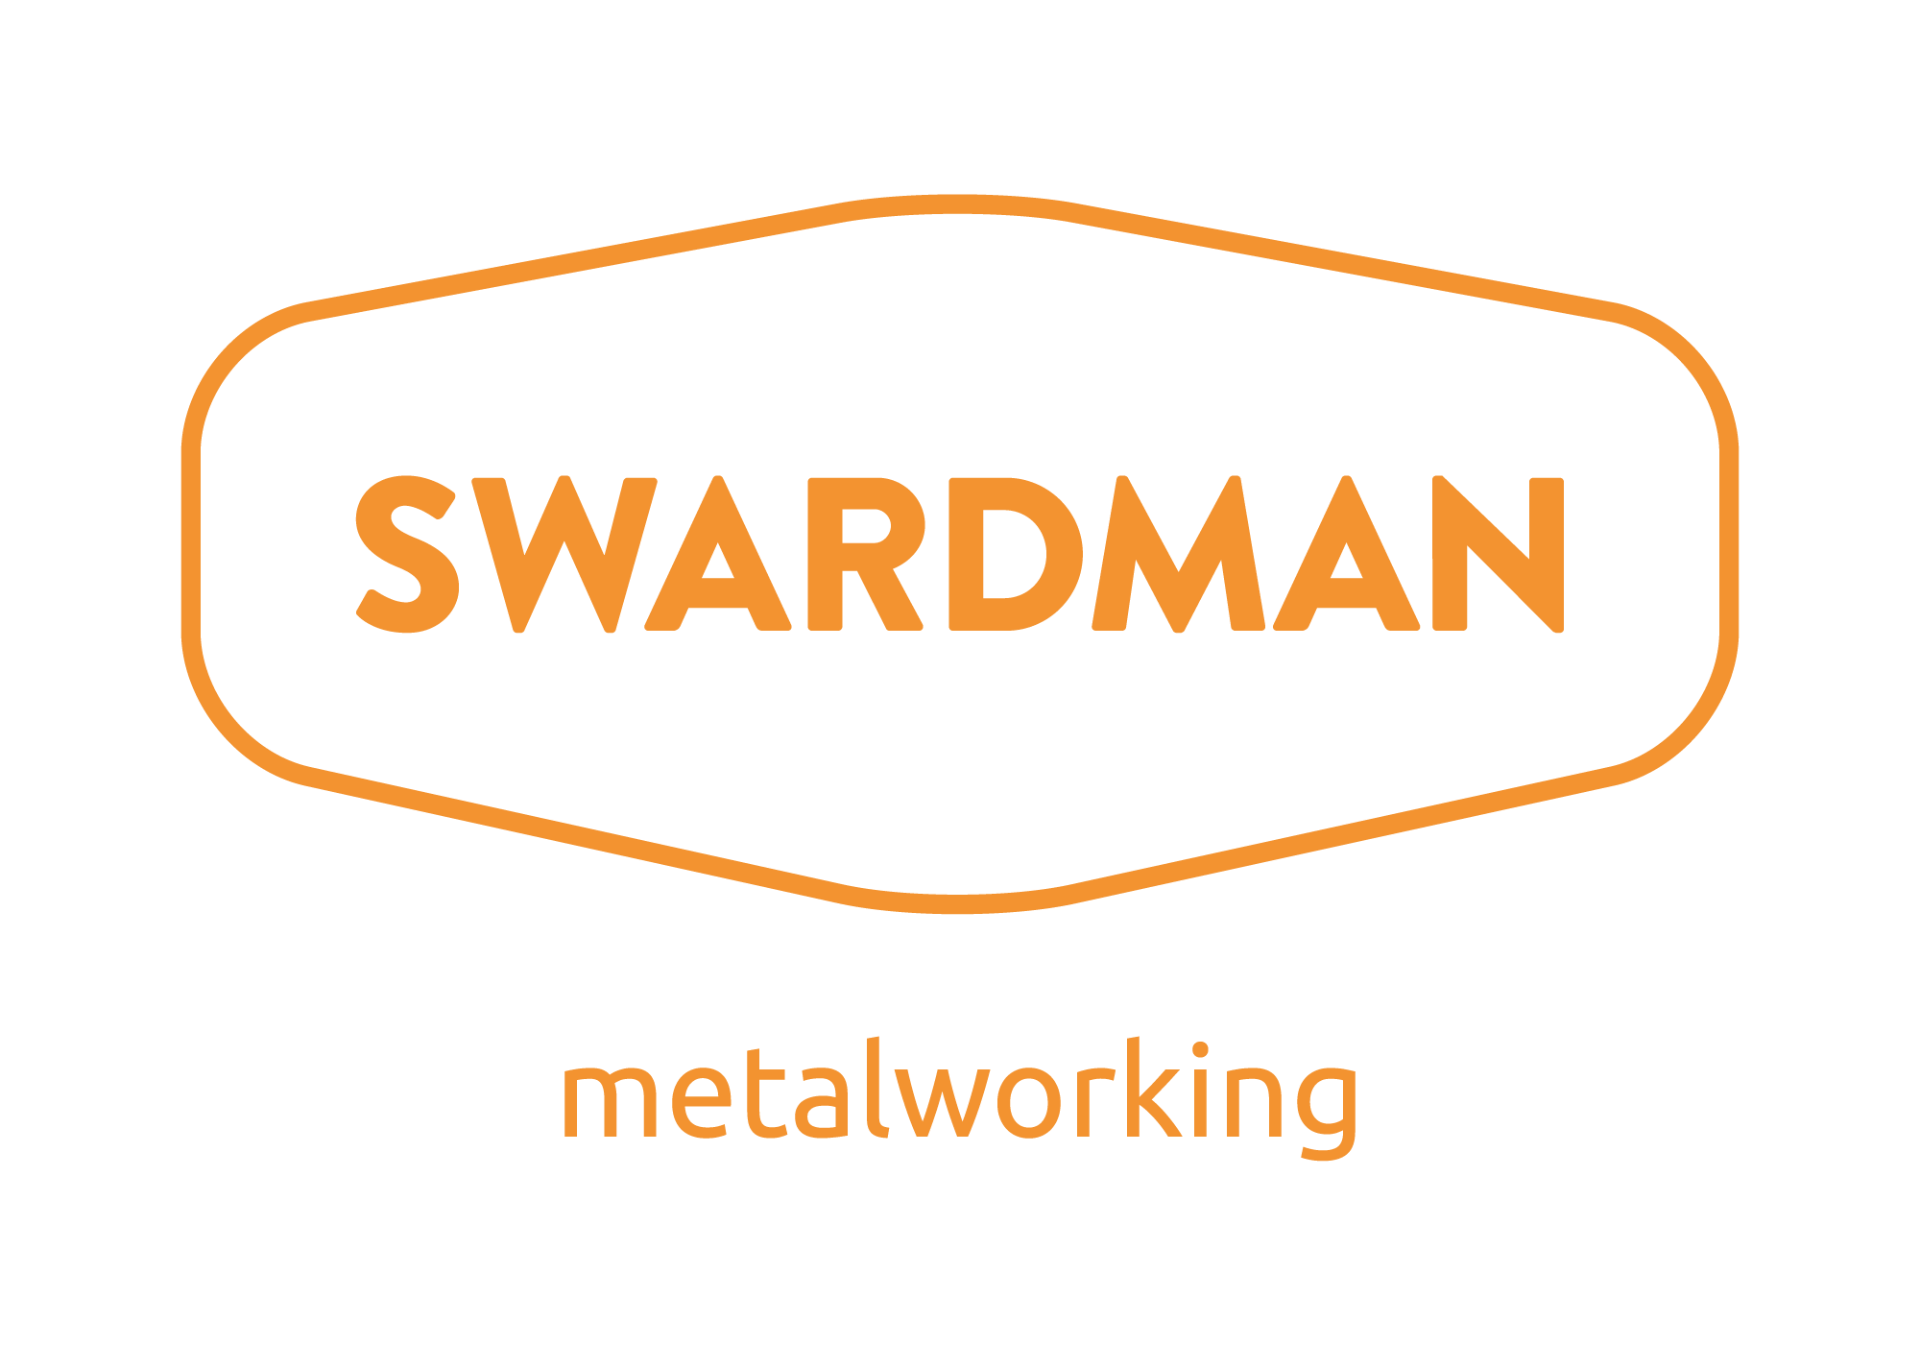 Swardman kovovýroba - 